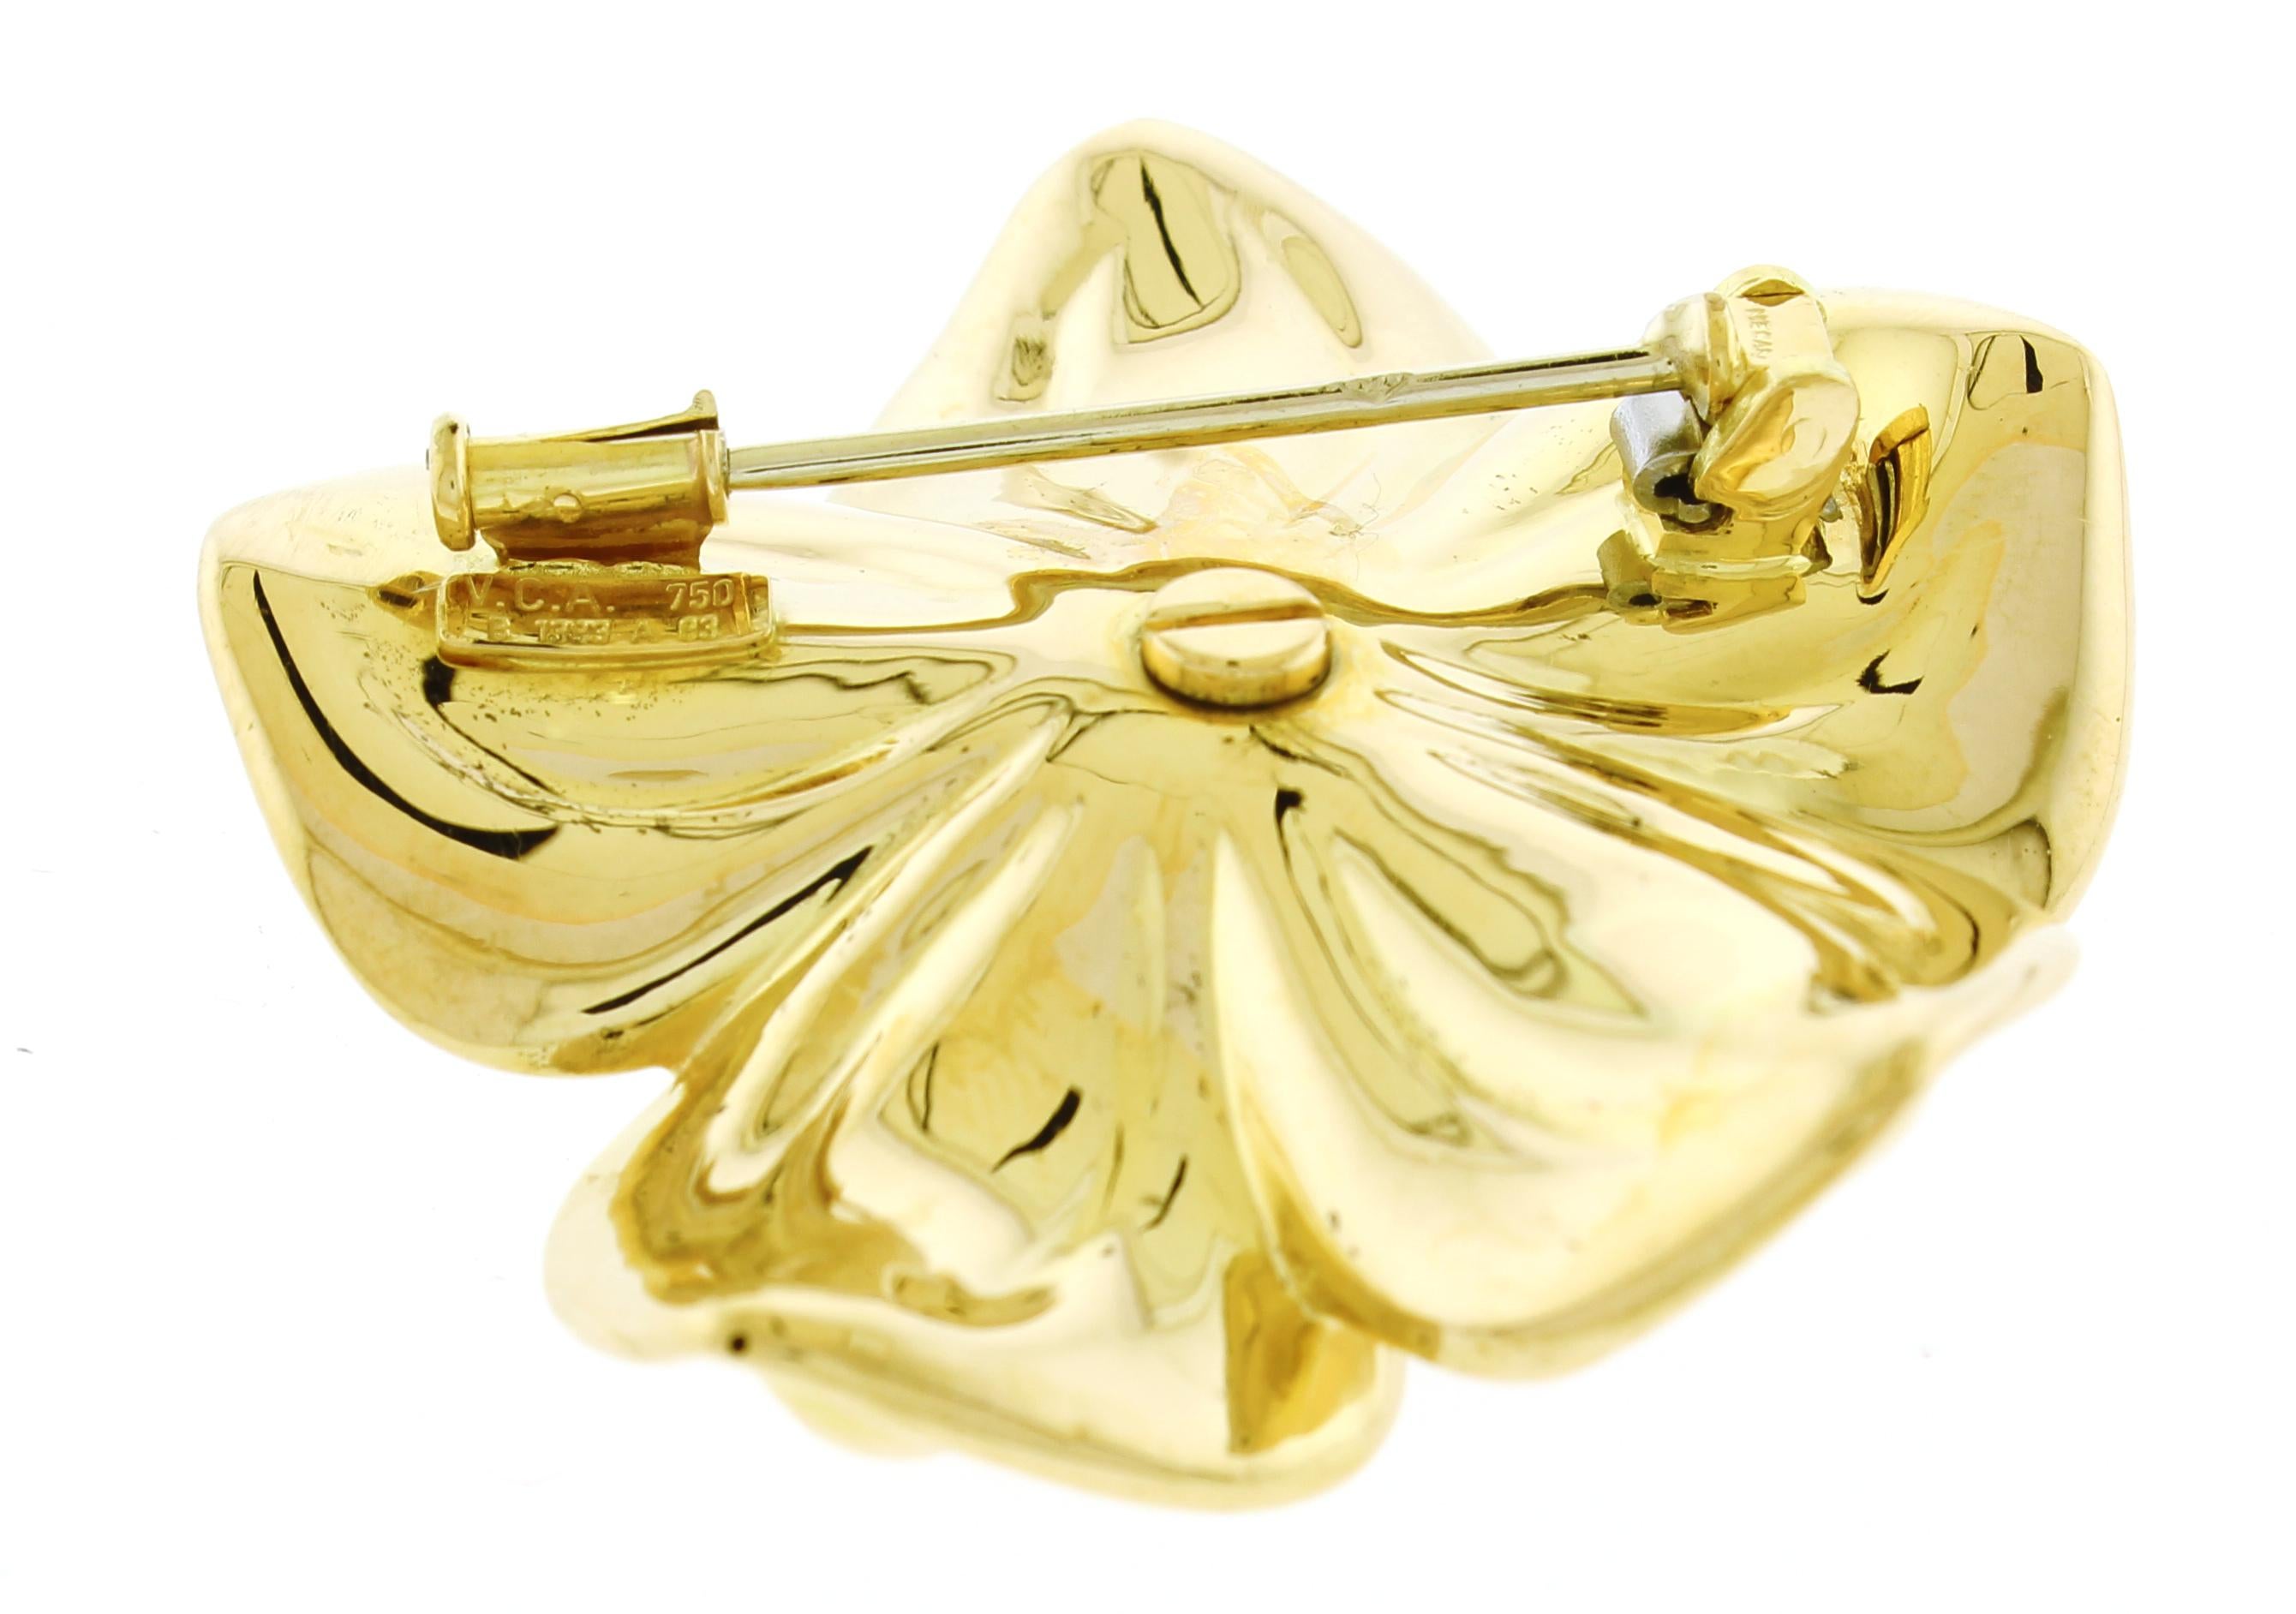 Diese wunderschöne Brosche von Van Cleef & Arpels stammt aus der Magnolia Collection.
- • Metall:18 Karat Gelbgold
- • Circa: 1980er Jahre
- • Edelstein: 6 Diamanten=.49 Karat
- • Gewicht: 11,4 Gramm
- • Abmessungen: 1 5/8 x 1 5/8 Zoll
- •